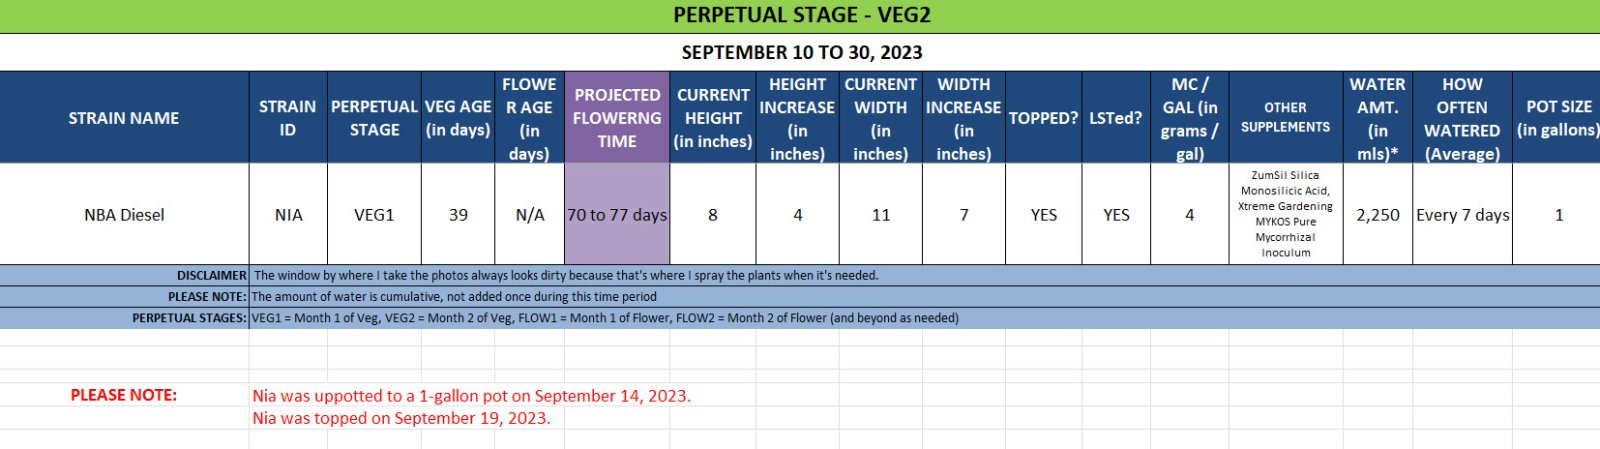 420 Update for Nia - September 10 to 30, 2023.jpg